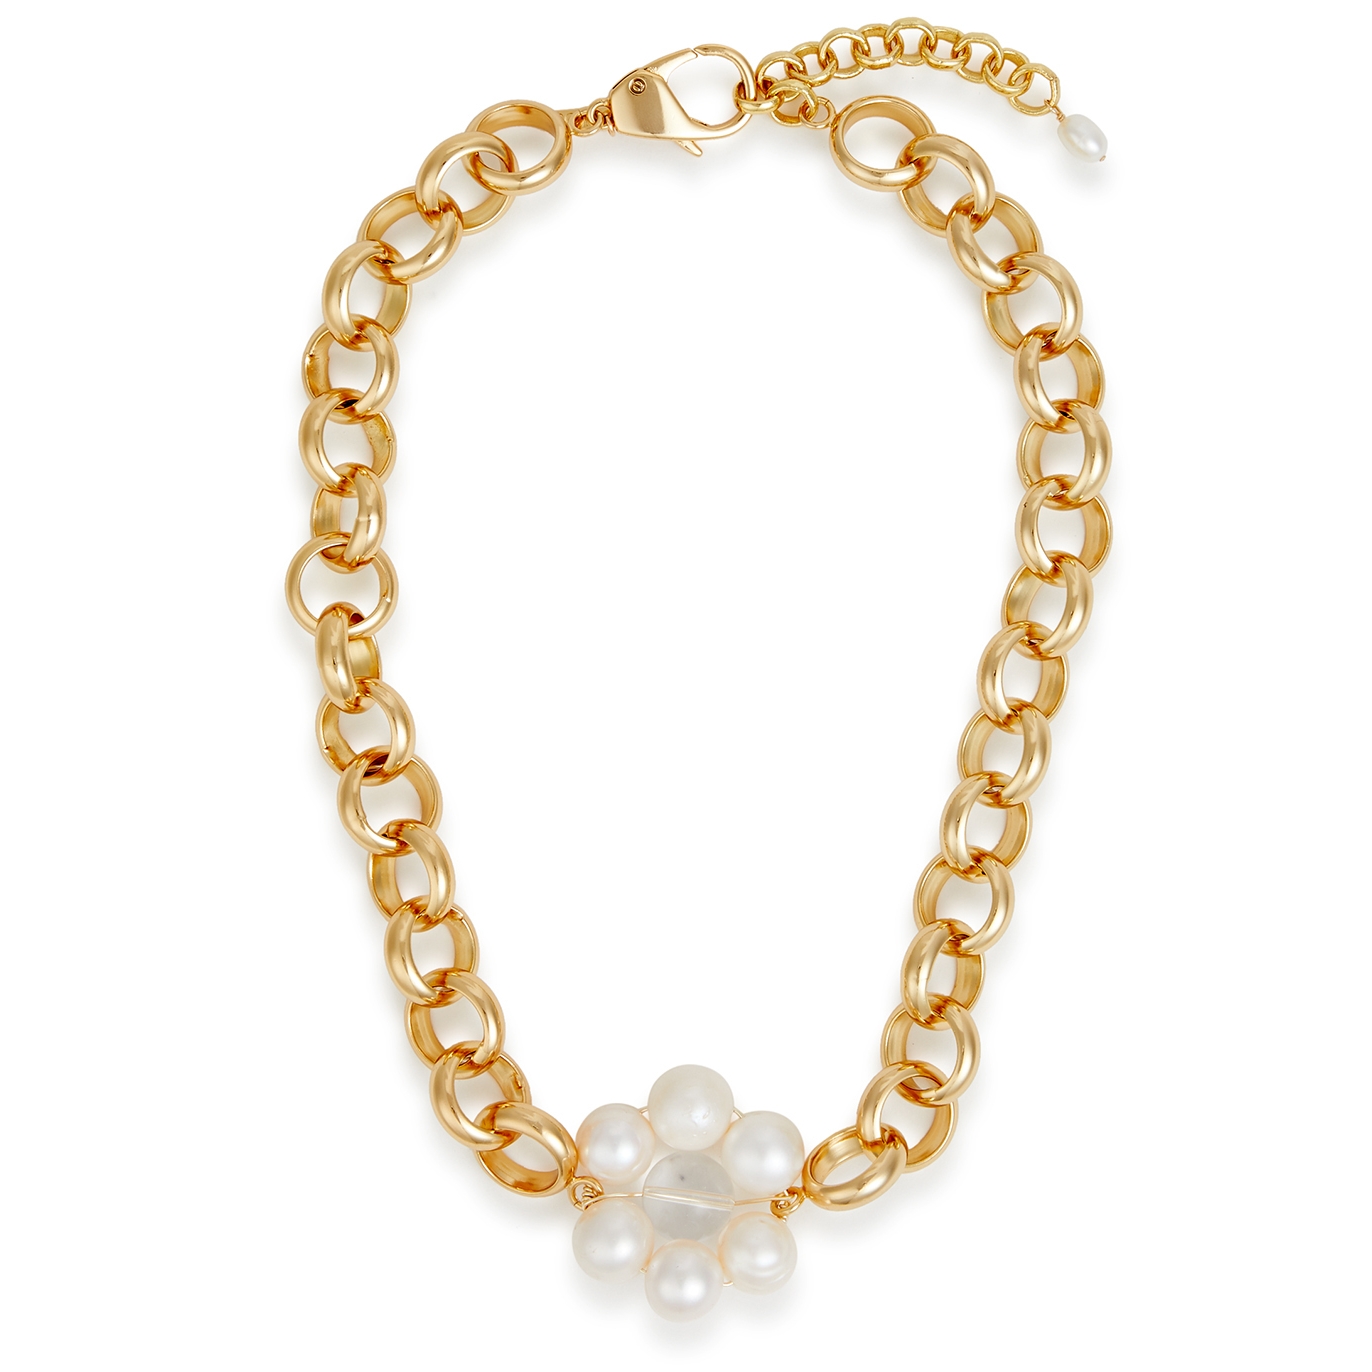 Eliou Rozela Embellished Chain Necklace - Gold - One Size